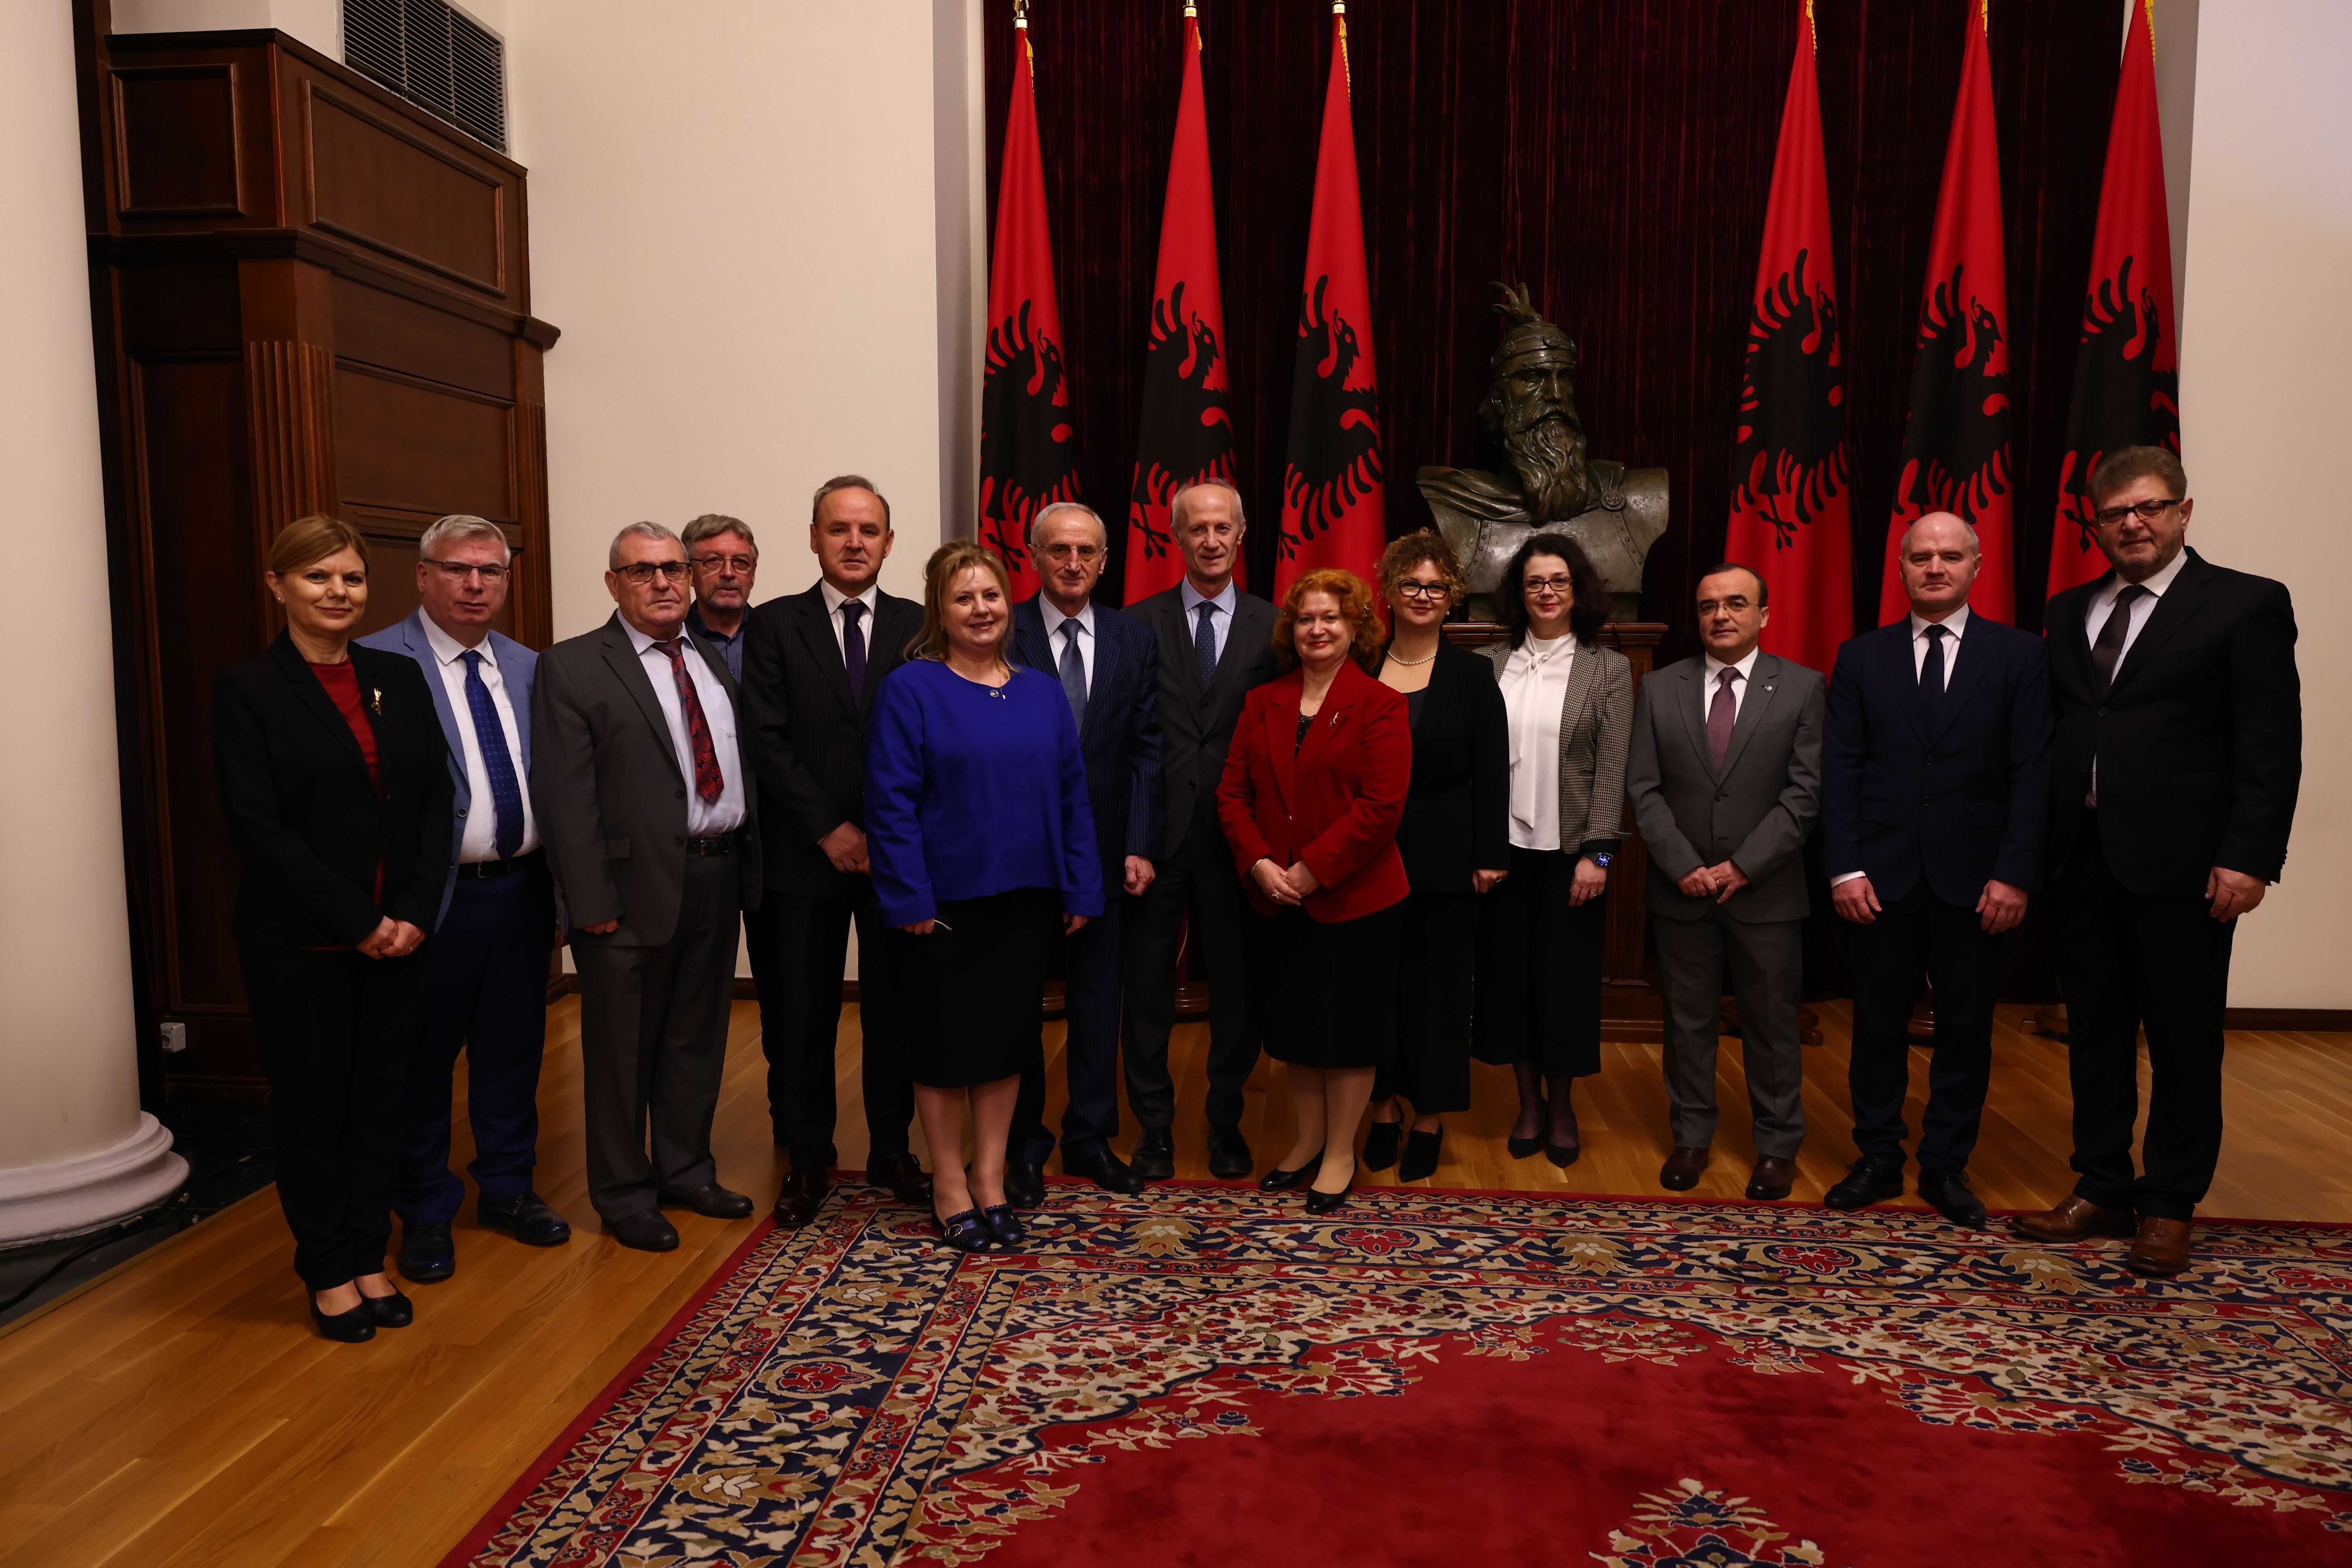 Dhënia e titullit të nderit “Mjeshtër i Madh” nga Presidenti i Republikës së Shqipërisë